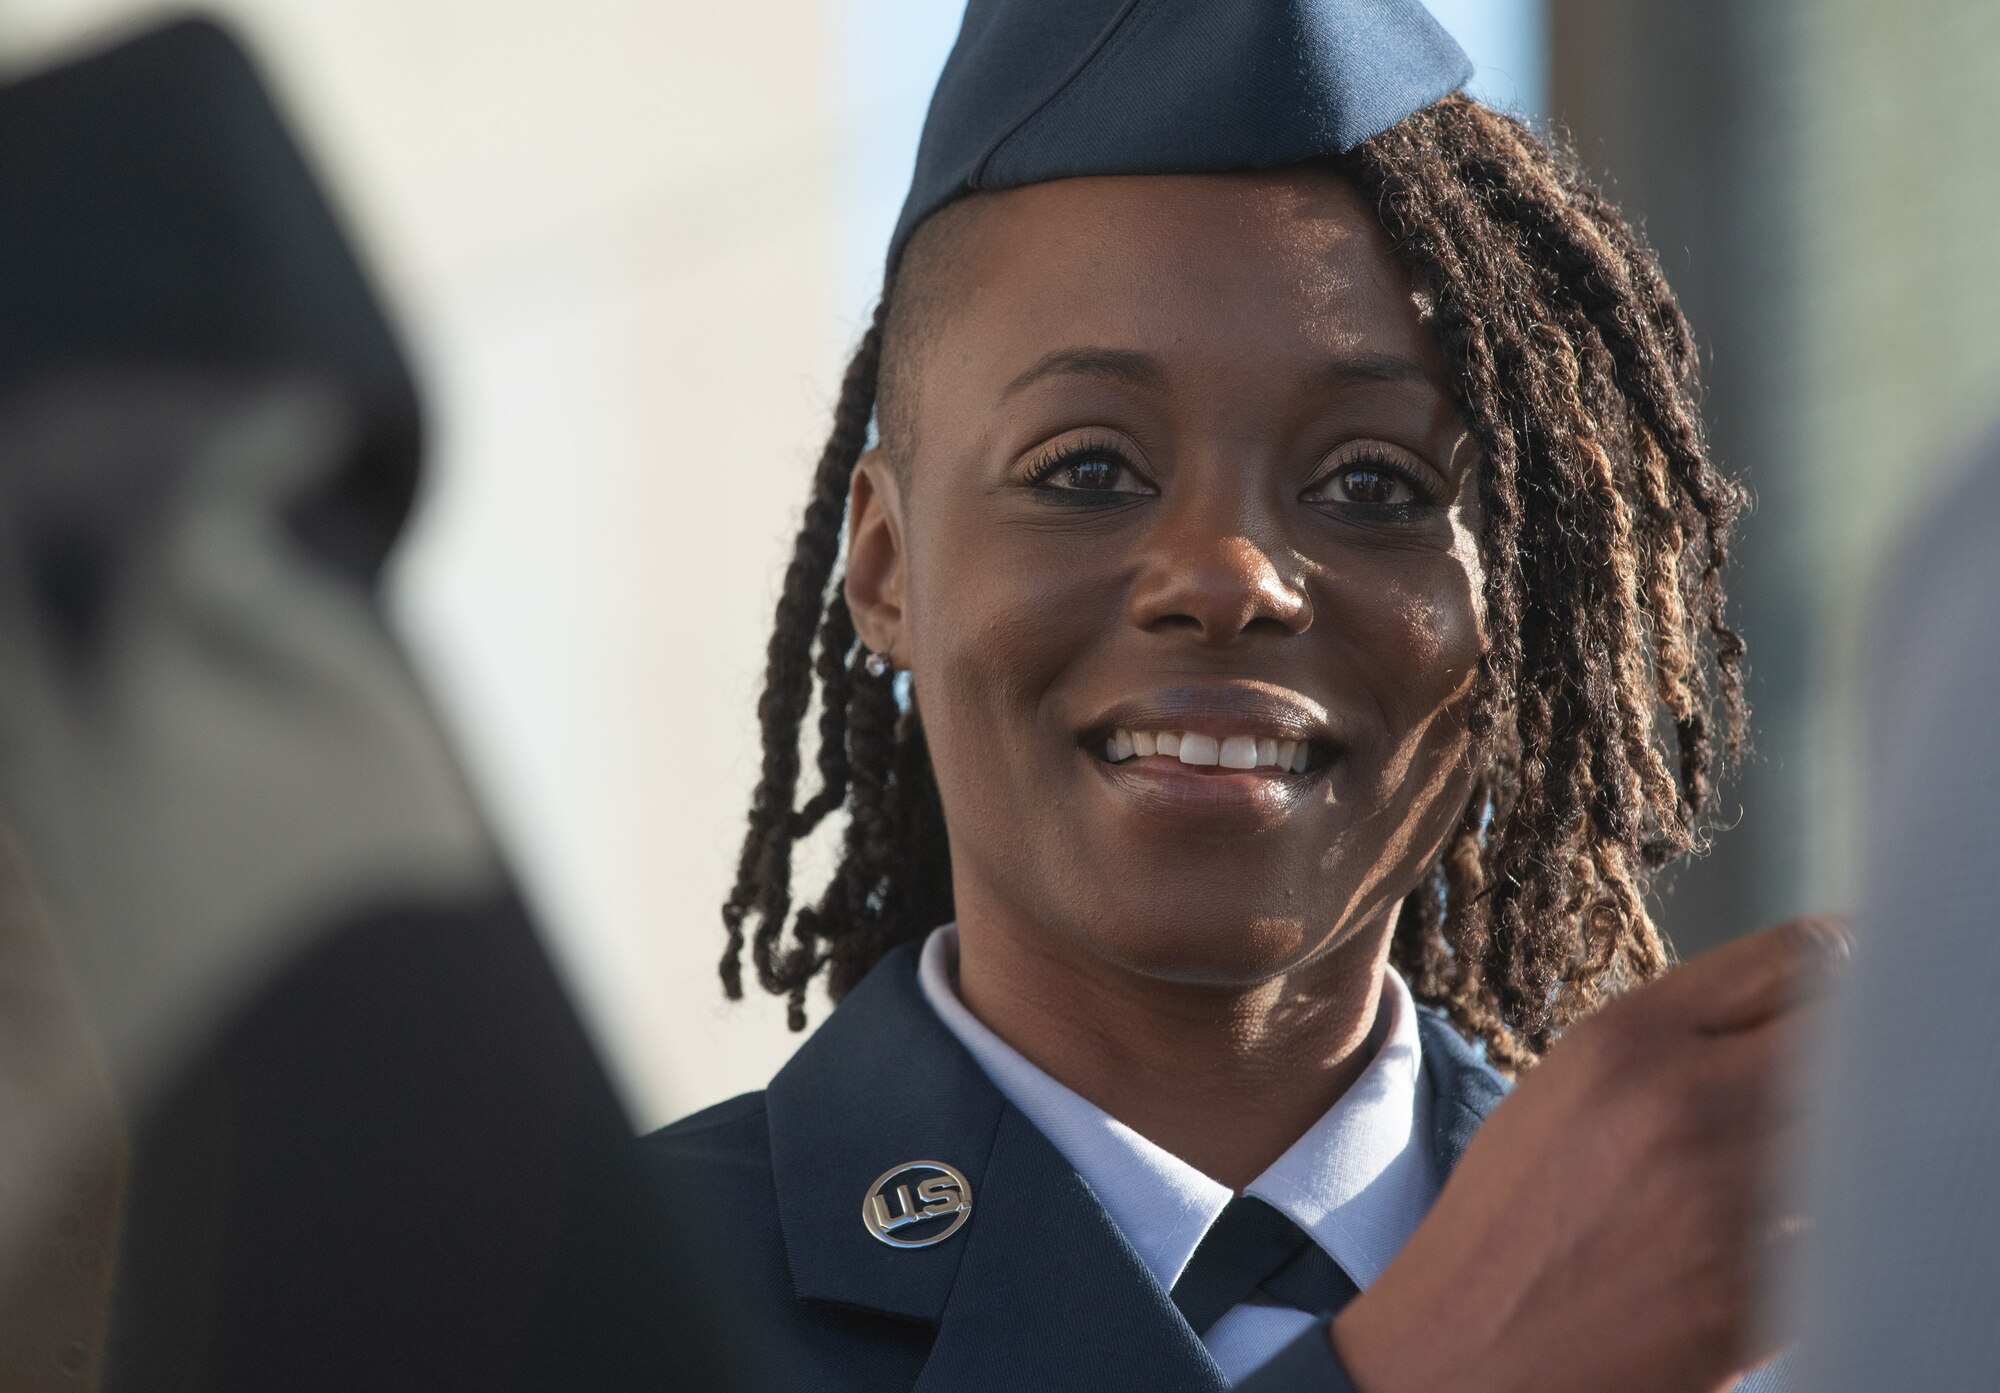 Women veterans honored at War Memorial ceremony